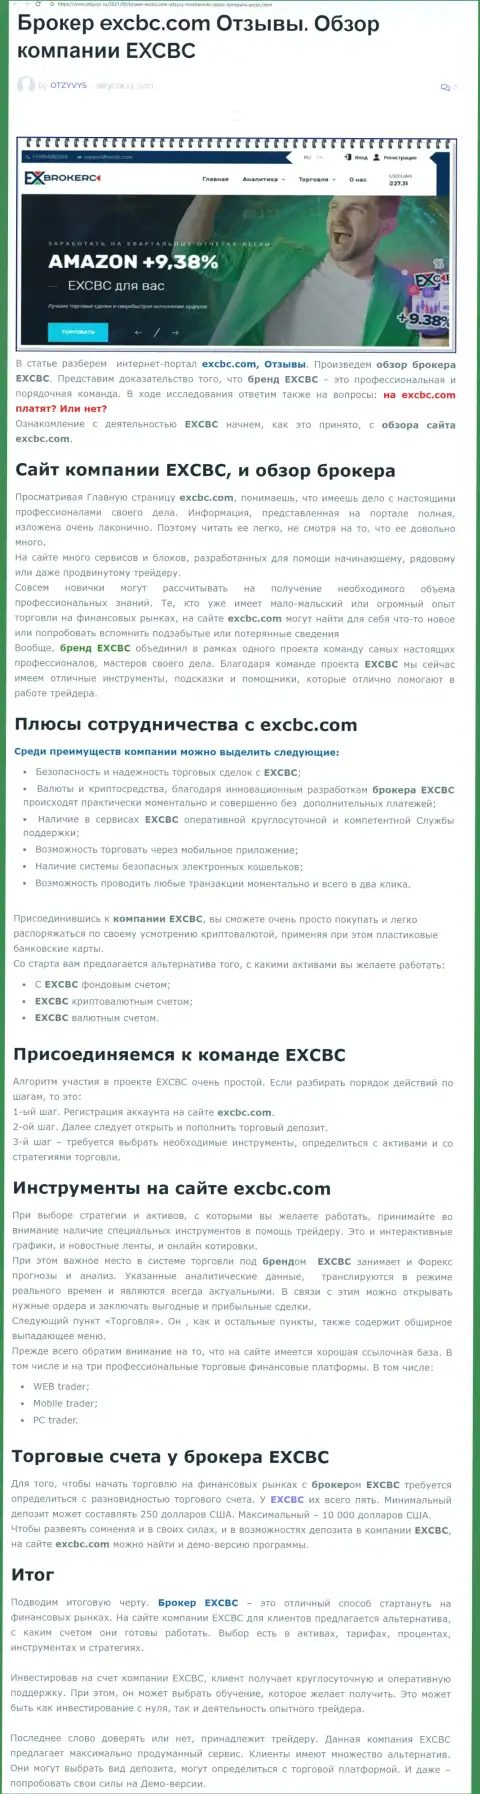 Статья об ФОРЕКС дилинговой организации EXCBC Сom на интернет-ресурсе Отзывс Ру